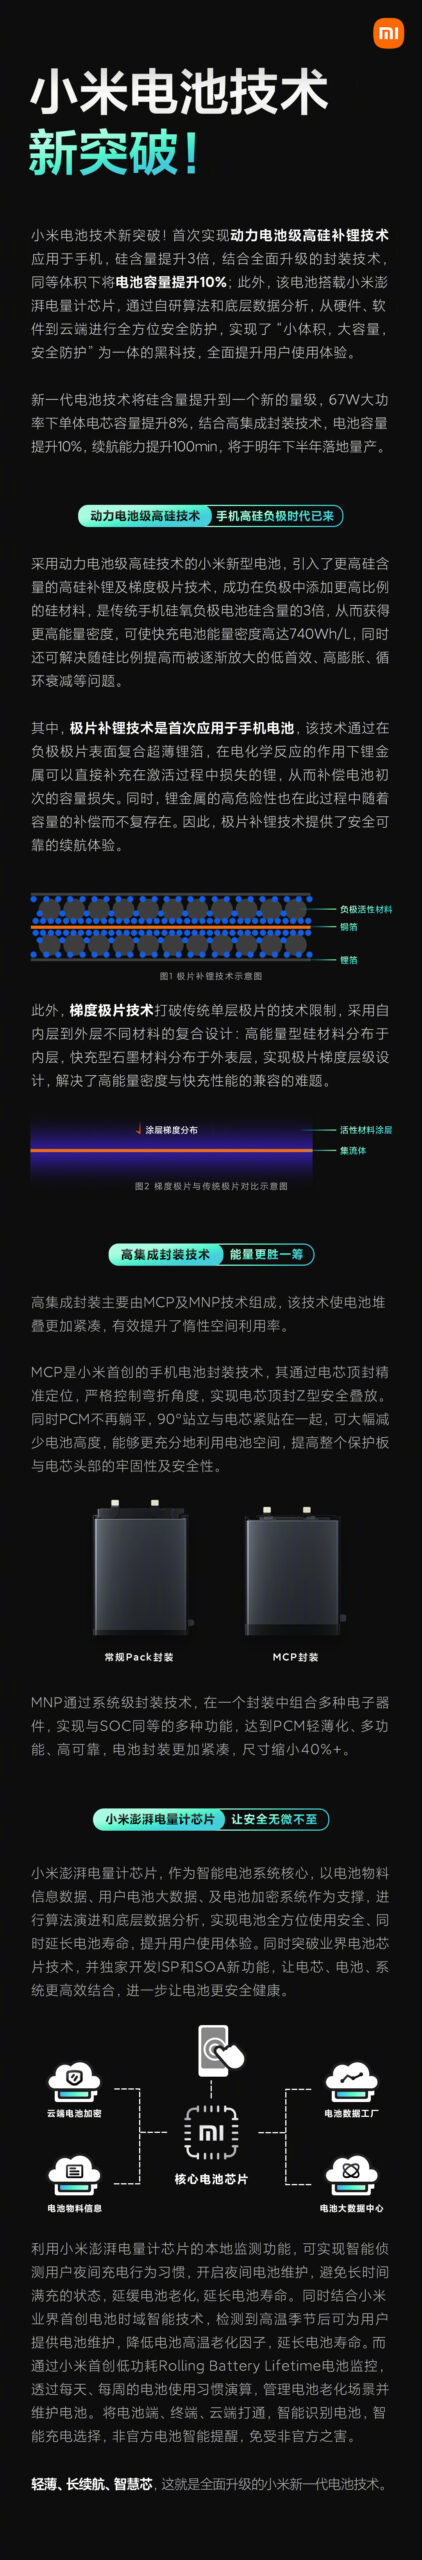 Xiaomi new battery technology